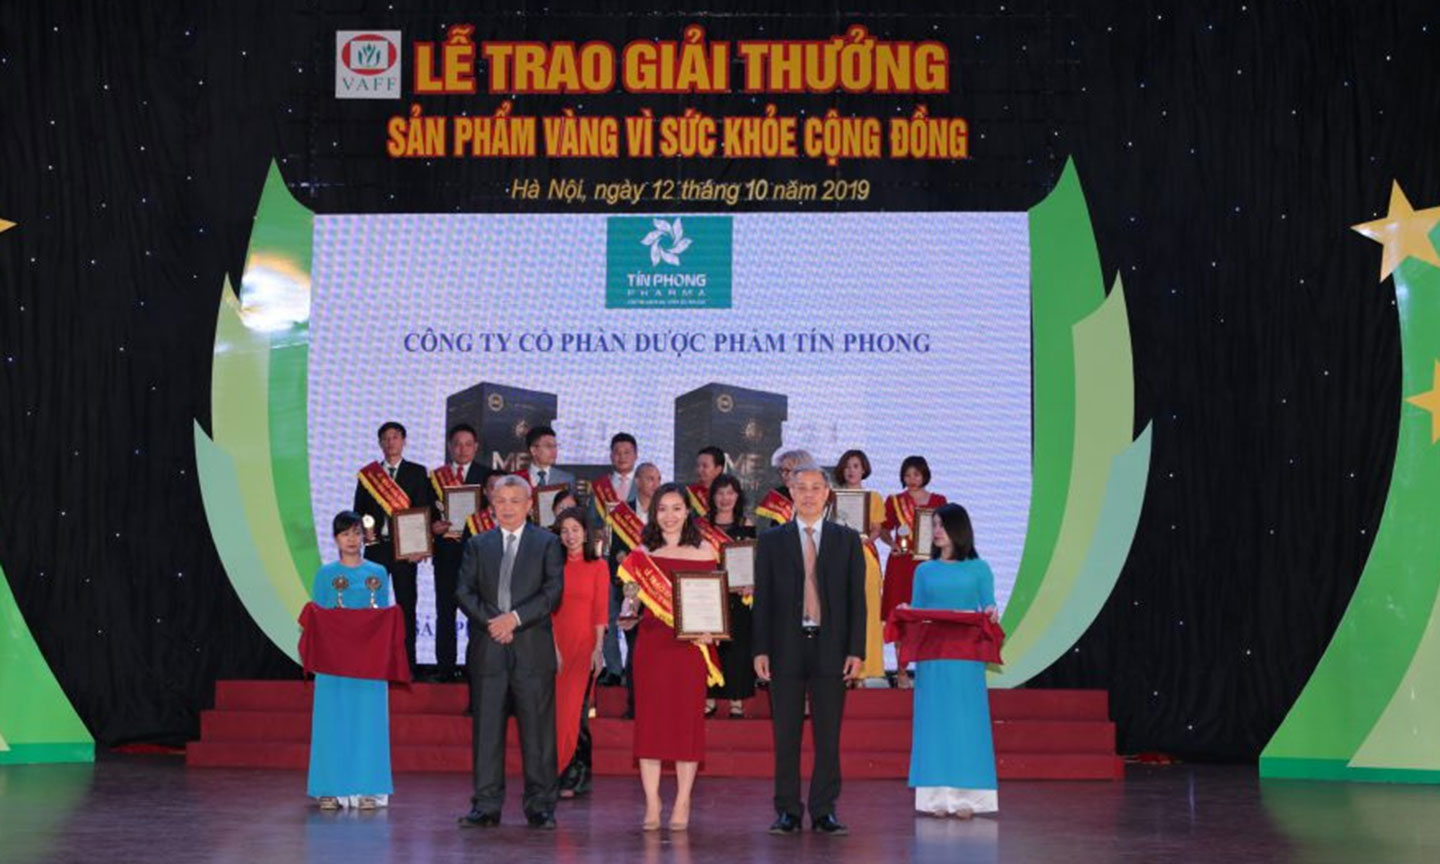 Công ty CPDP Tín Phong vinh dự nhận giải thưởng “Sản phẩm vàng vì sức khỏe cộng đồng.